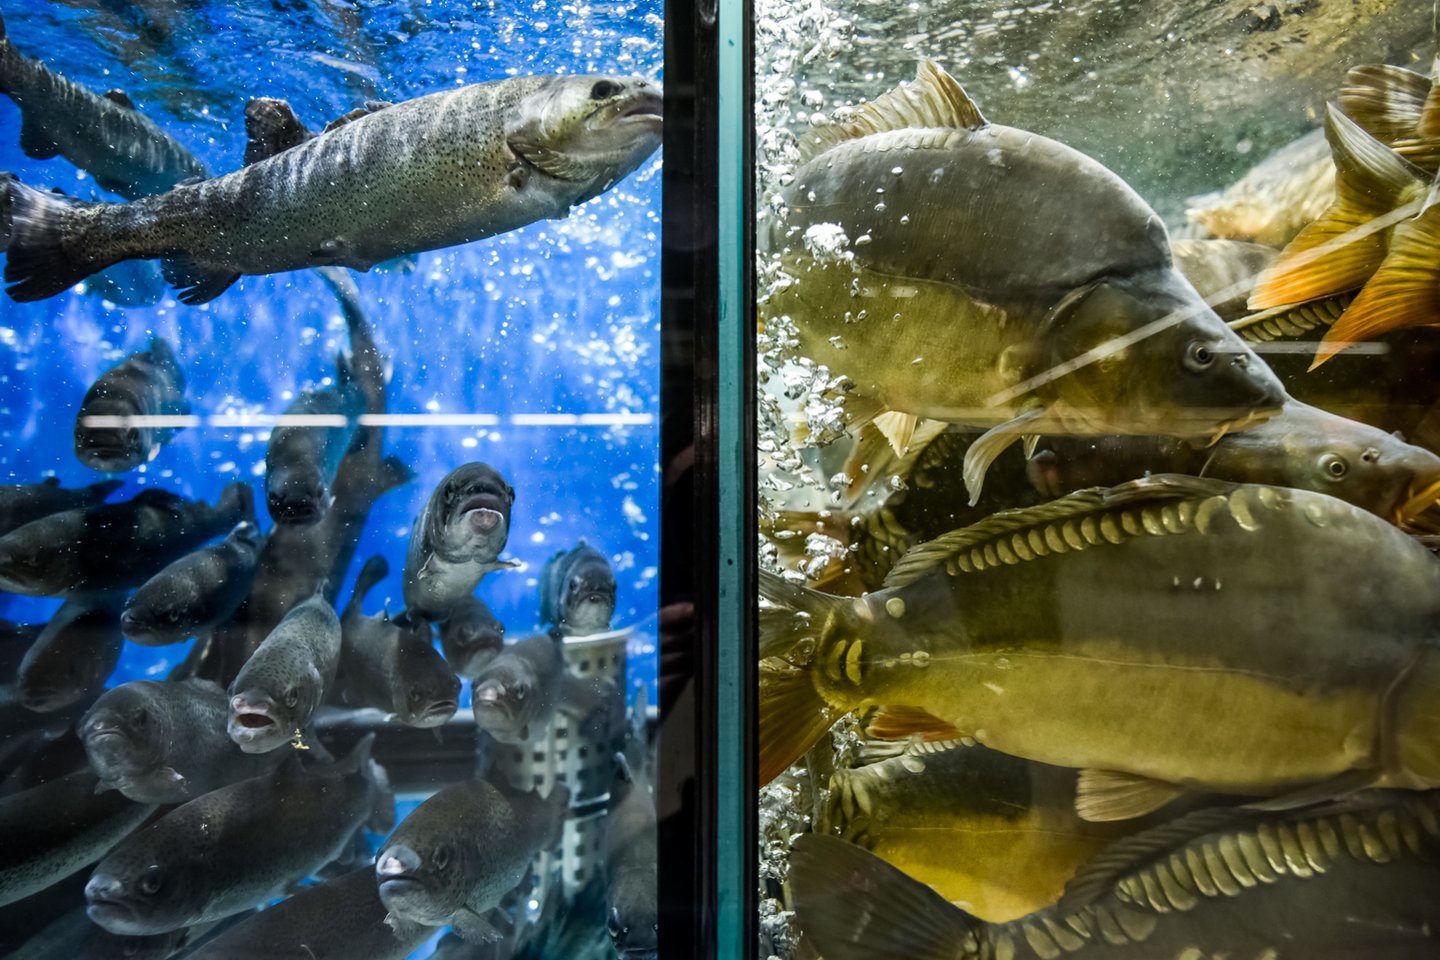 Visiškai „Maximos“ parduotuvėse akvariumų bus atsisakyta 2021 m. pradžioje.<br>D.Umbraso nuotr.